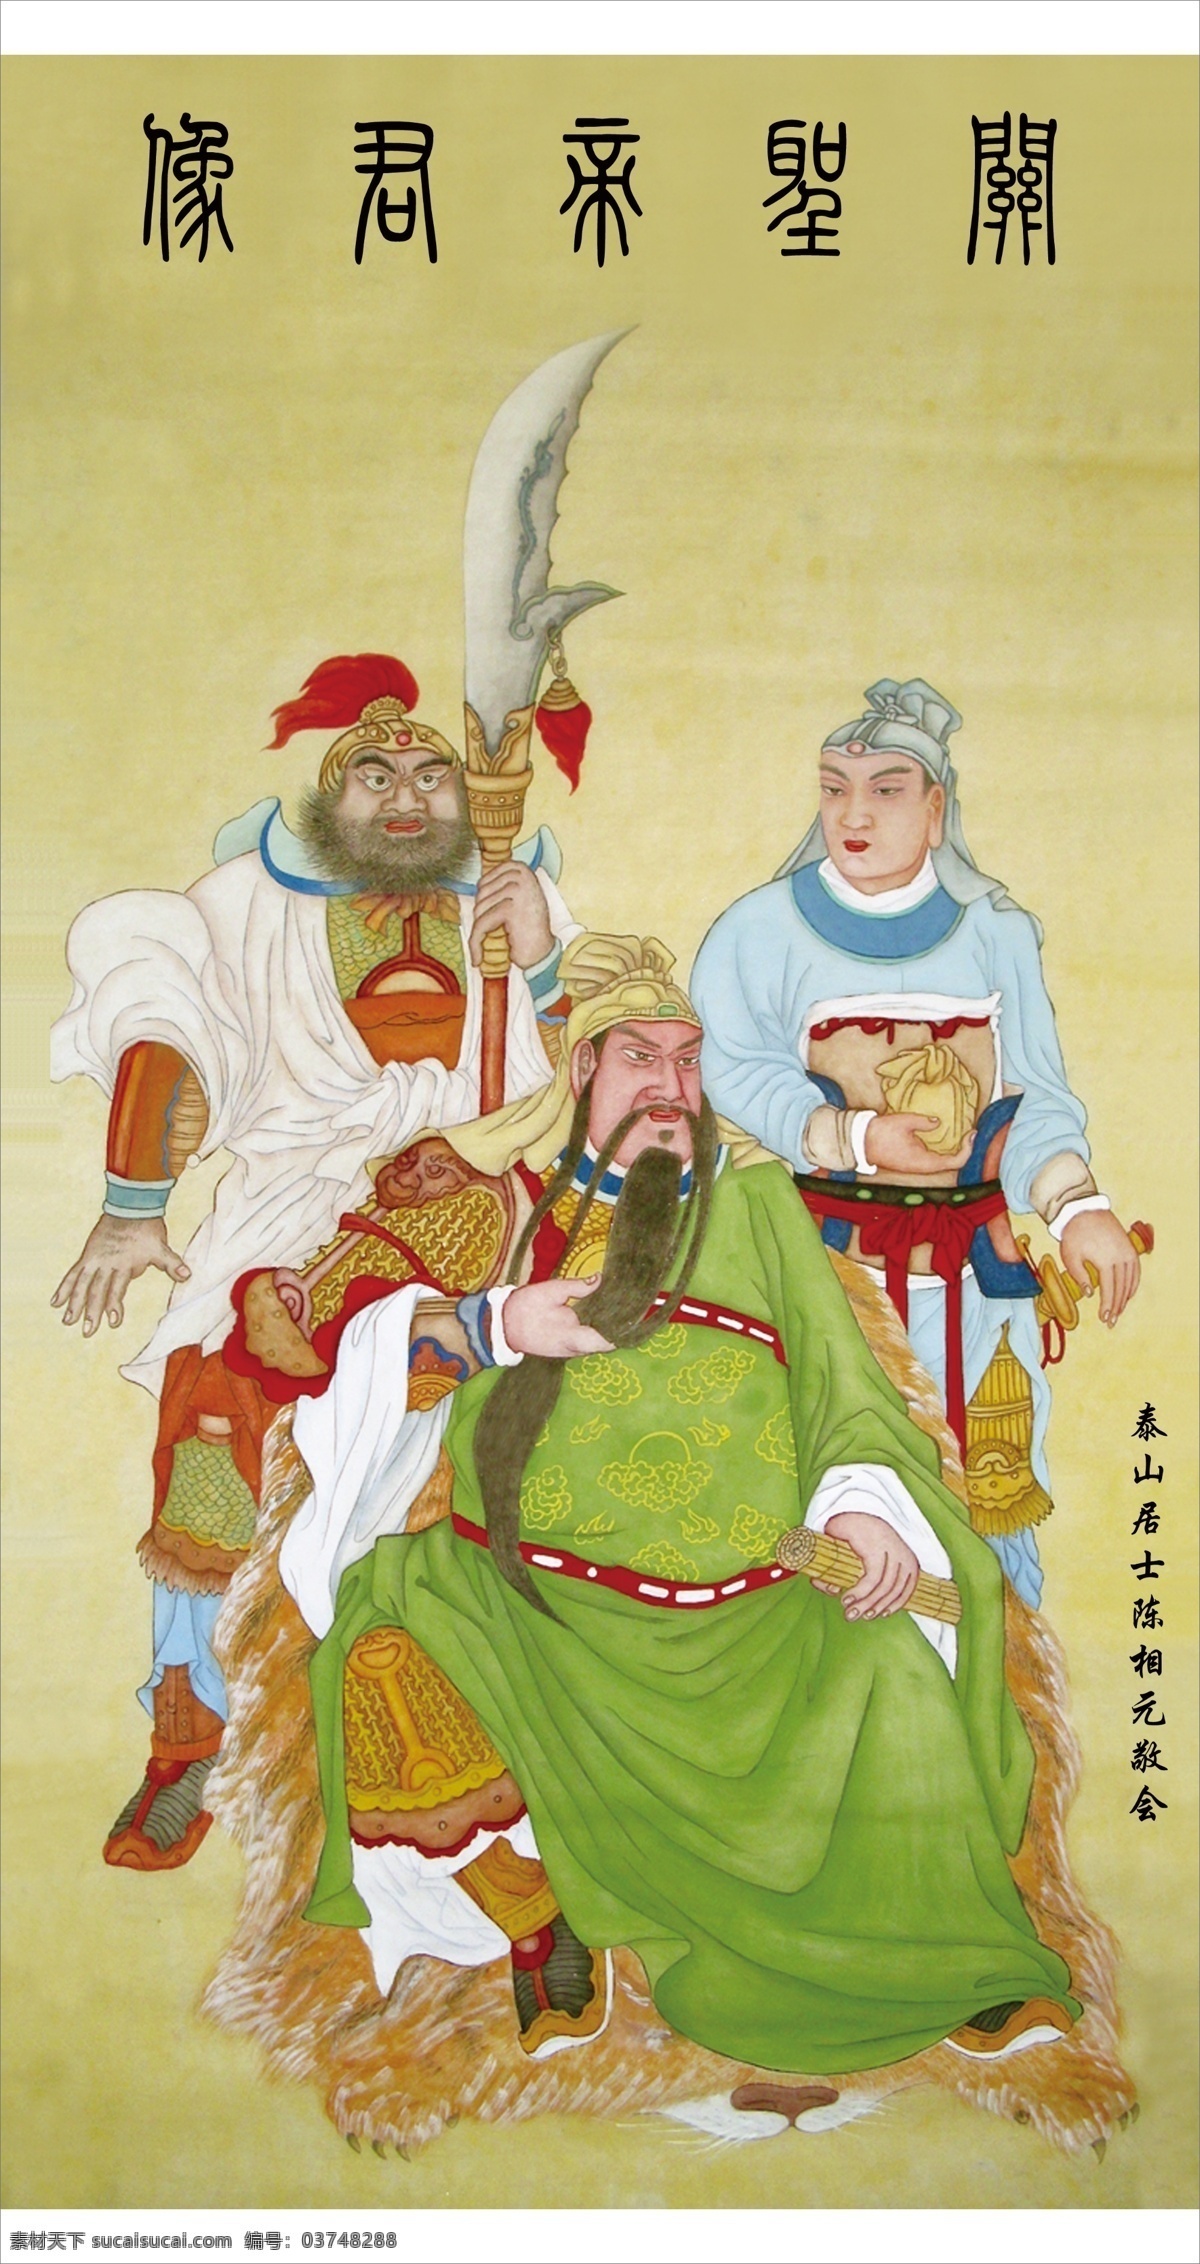 关圣帝君像 关羽 刘备 张飞 传统文化 绘画书法 文化艺术